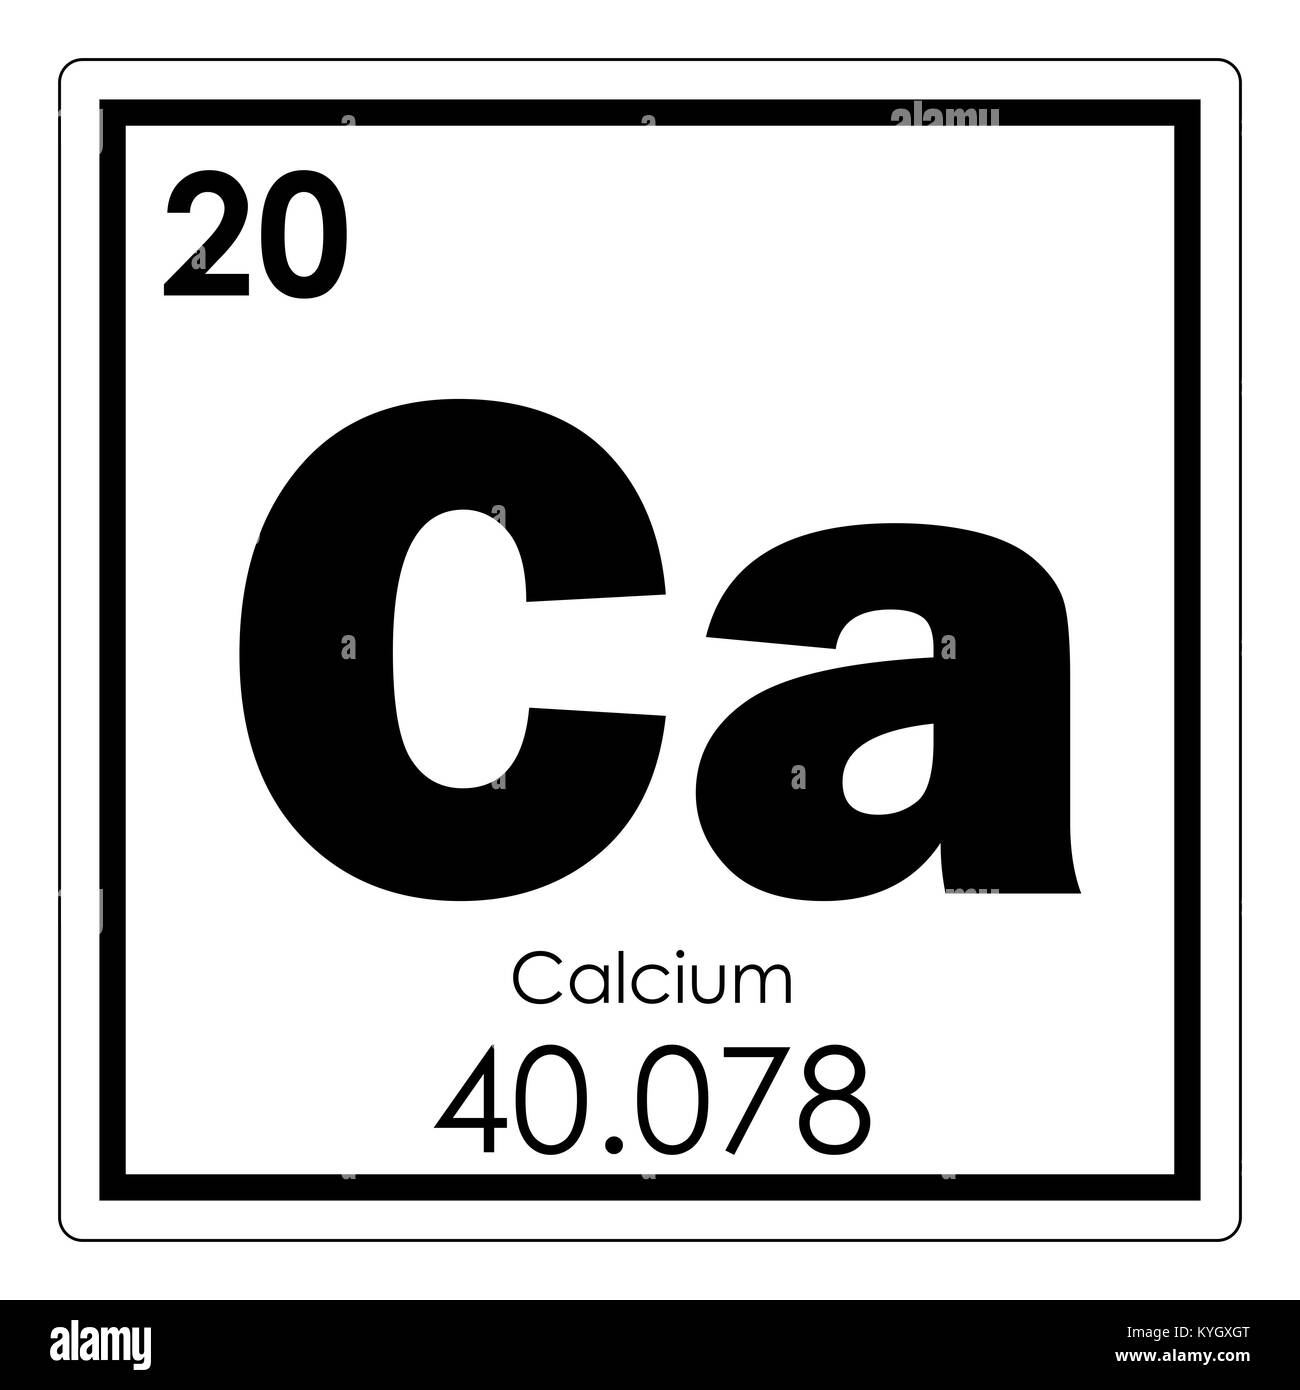 Calcium chemical element periodic table science symbol Stock Photo